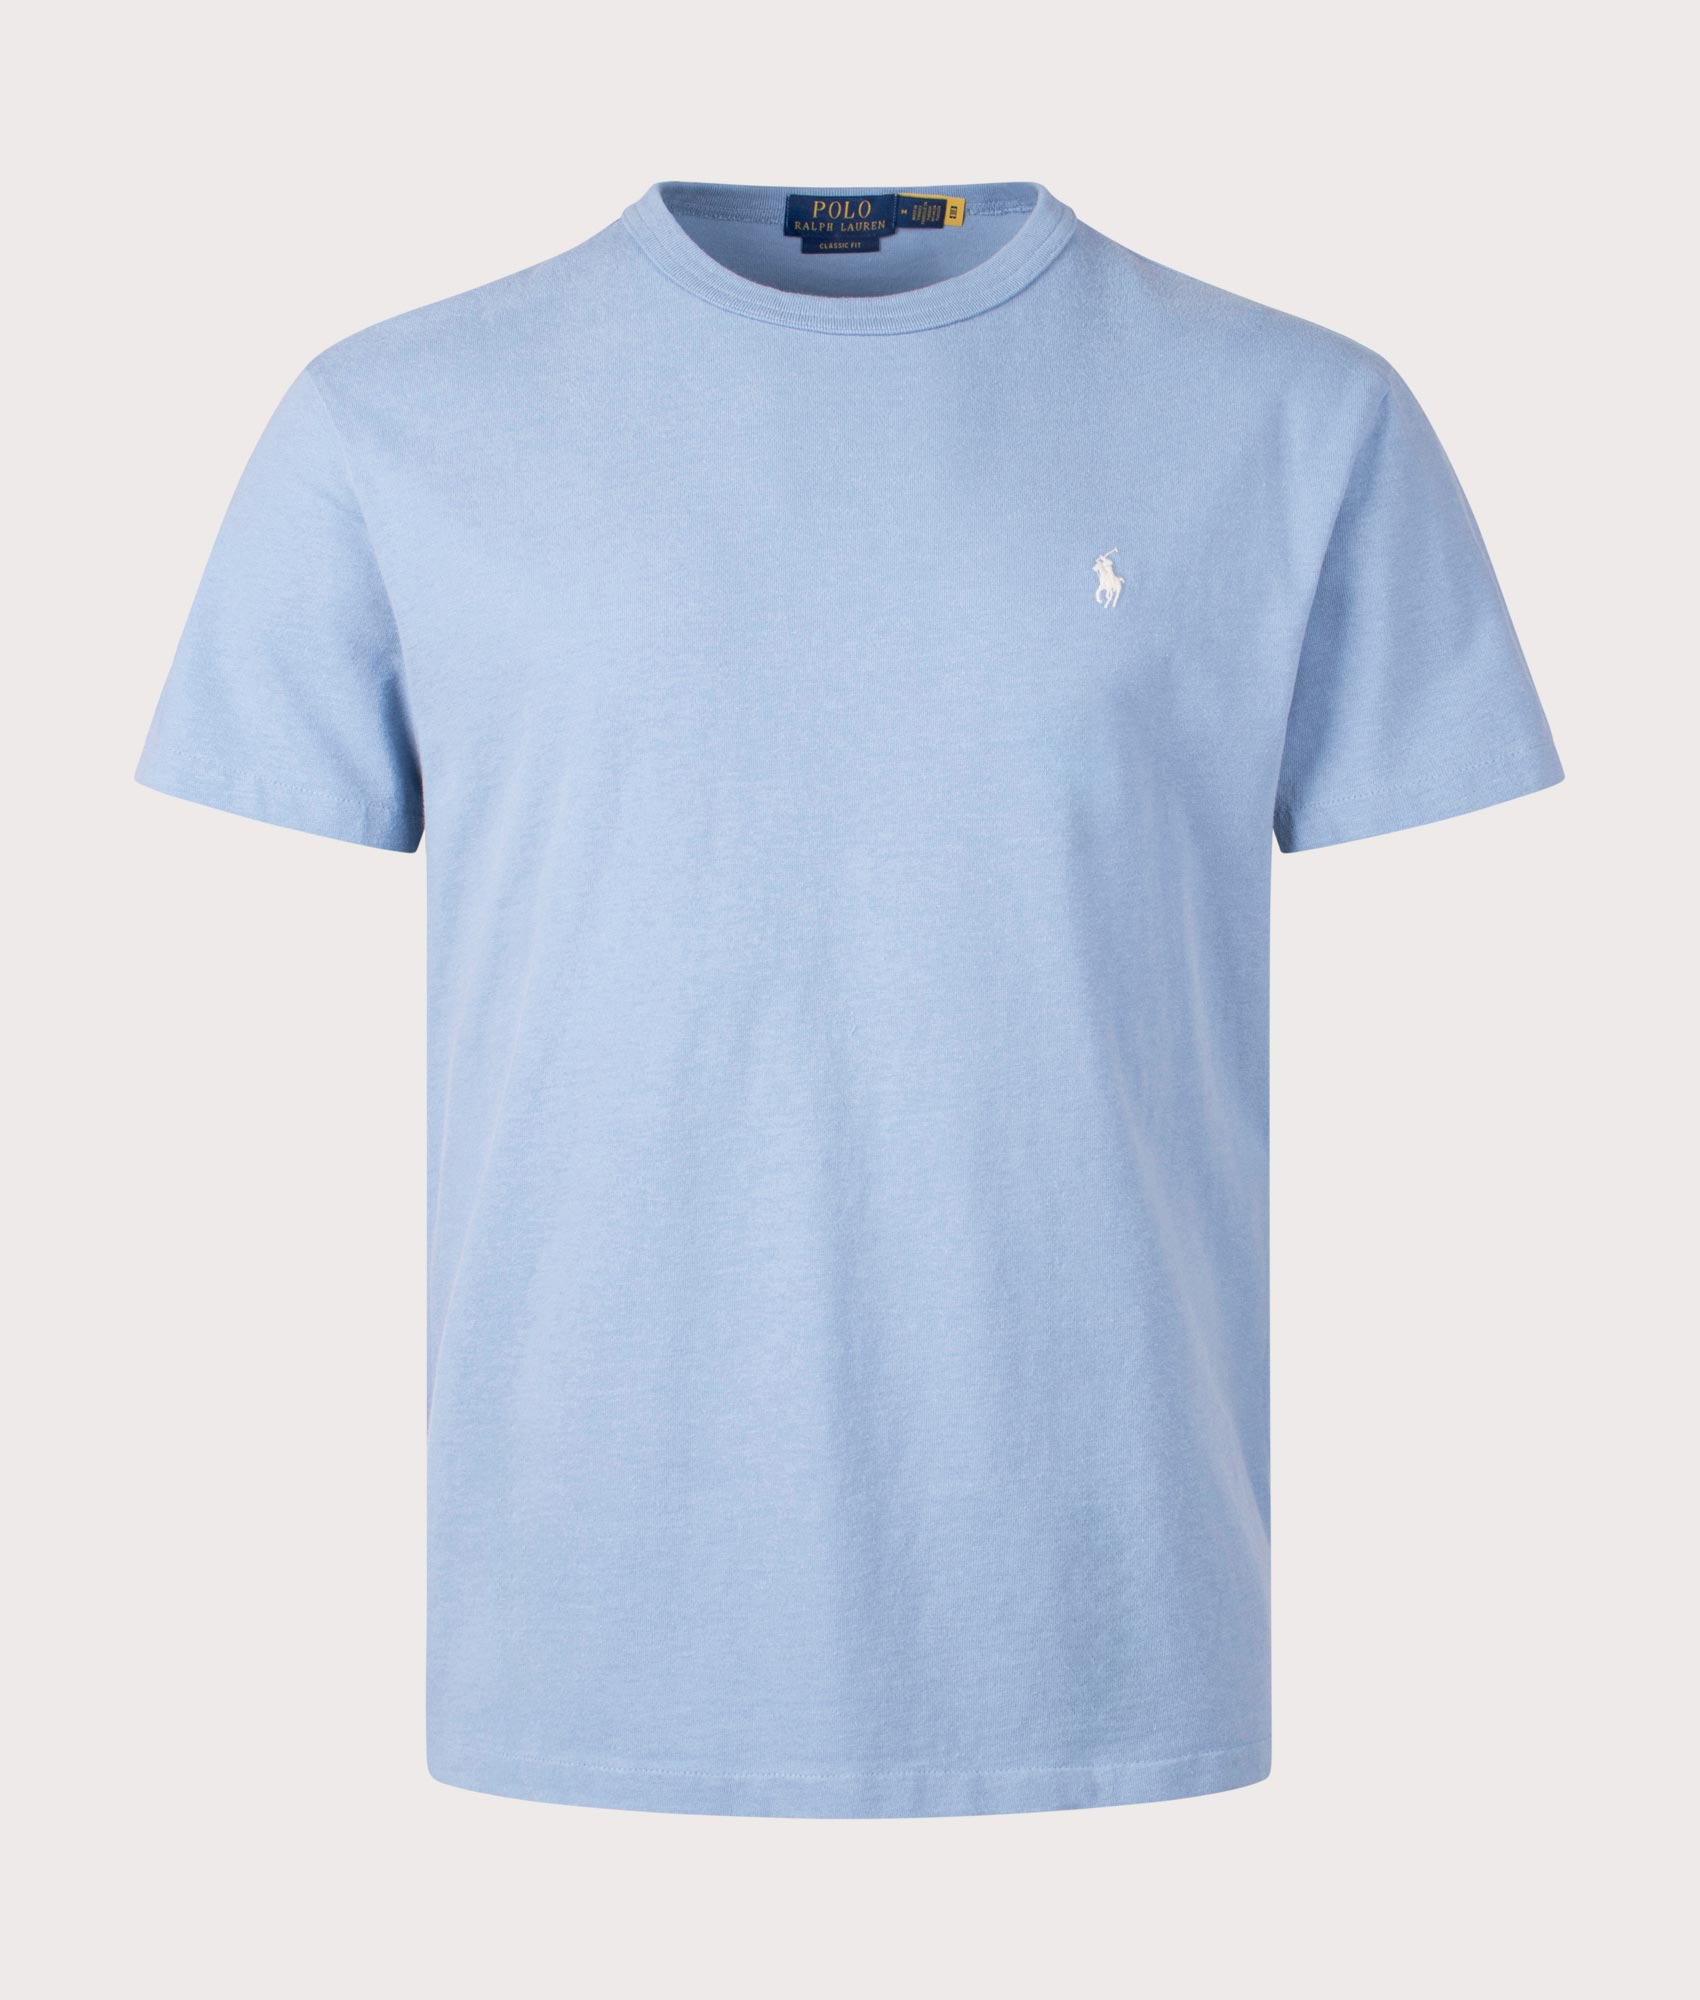 Polo Ralph Lauren Mens Classic Fit Jersey T-Shirt - Colour: 014 Channel Blue - Size: XL